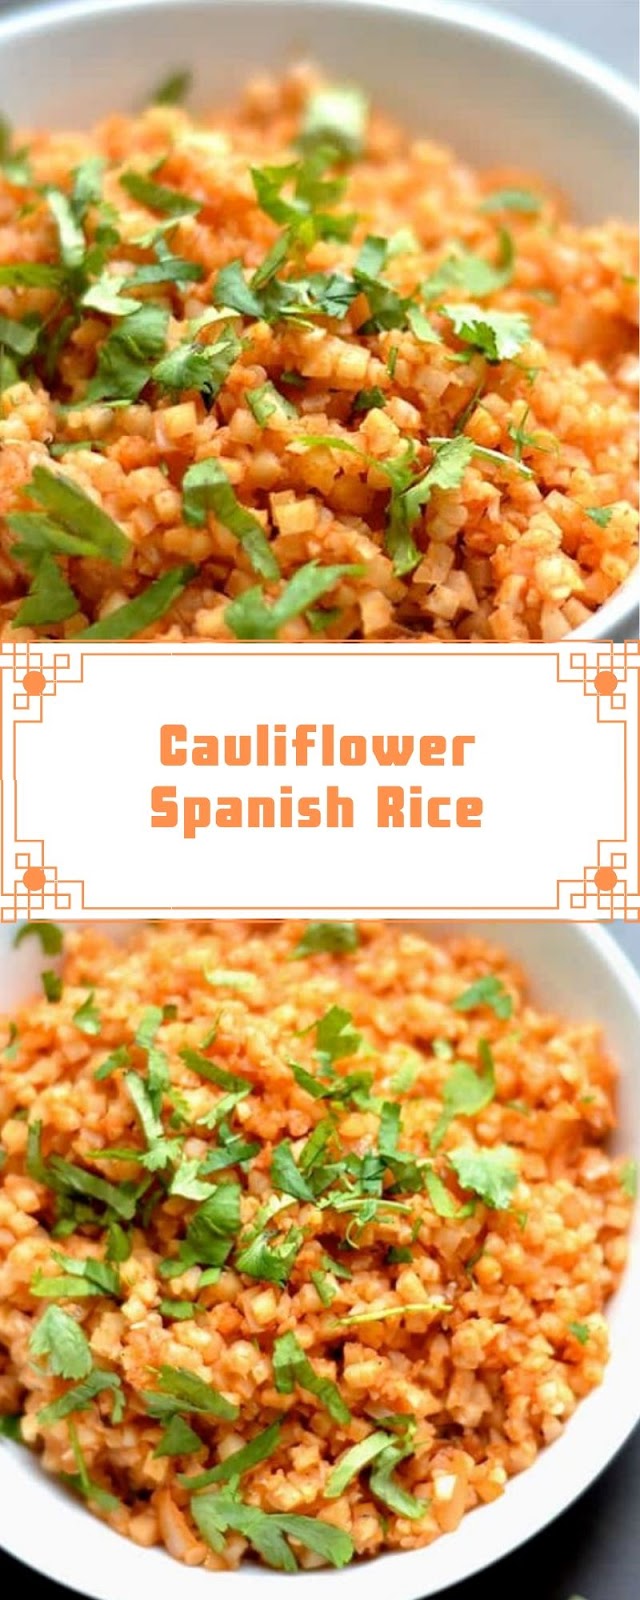 Cauliflower Spanish Rice